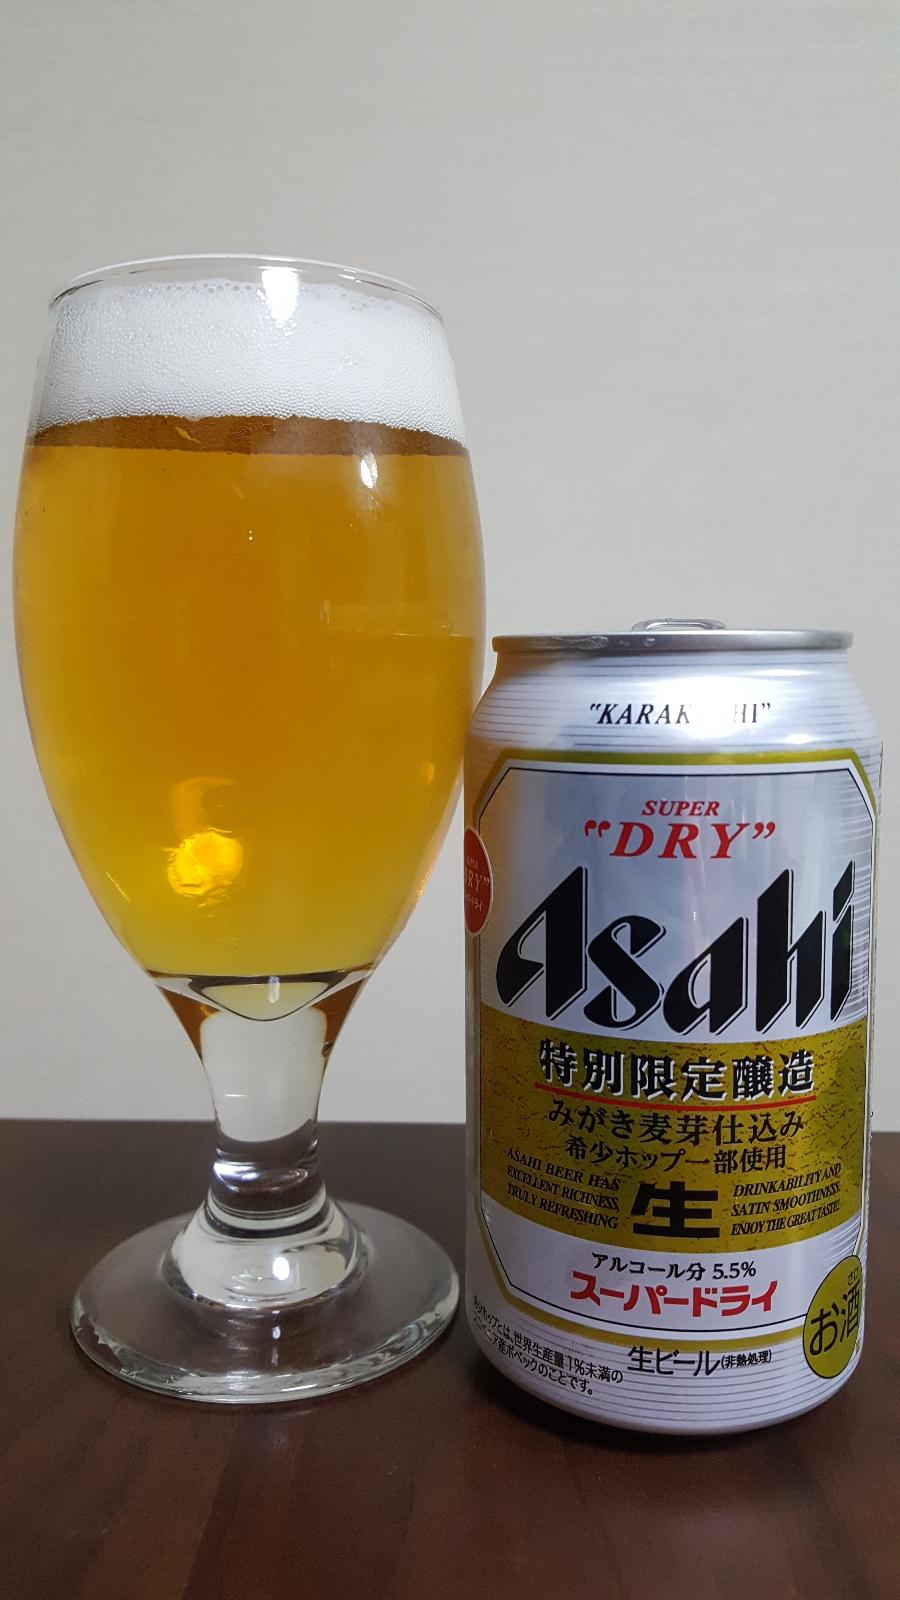 Asahi Super Dry Tokubetsu Gentei Shuzou